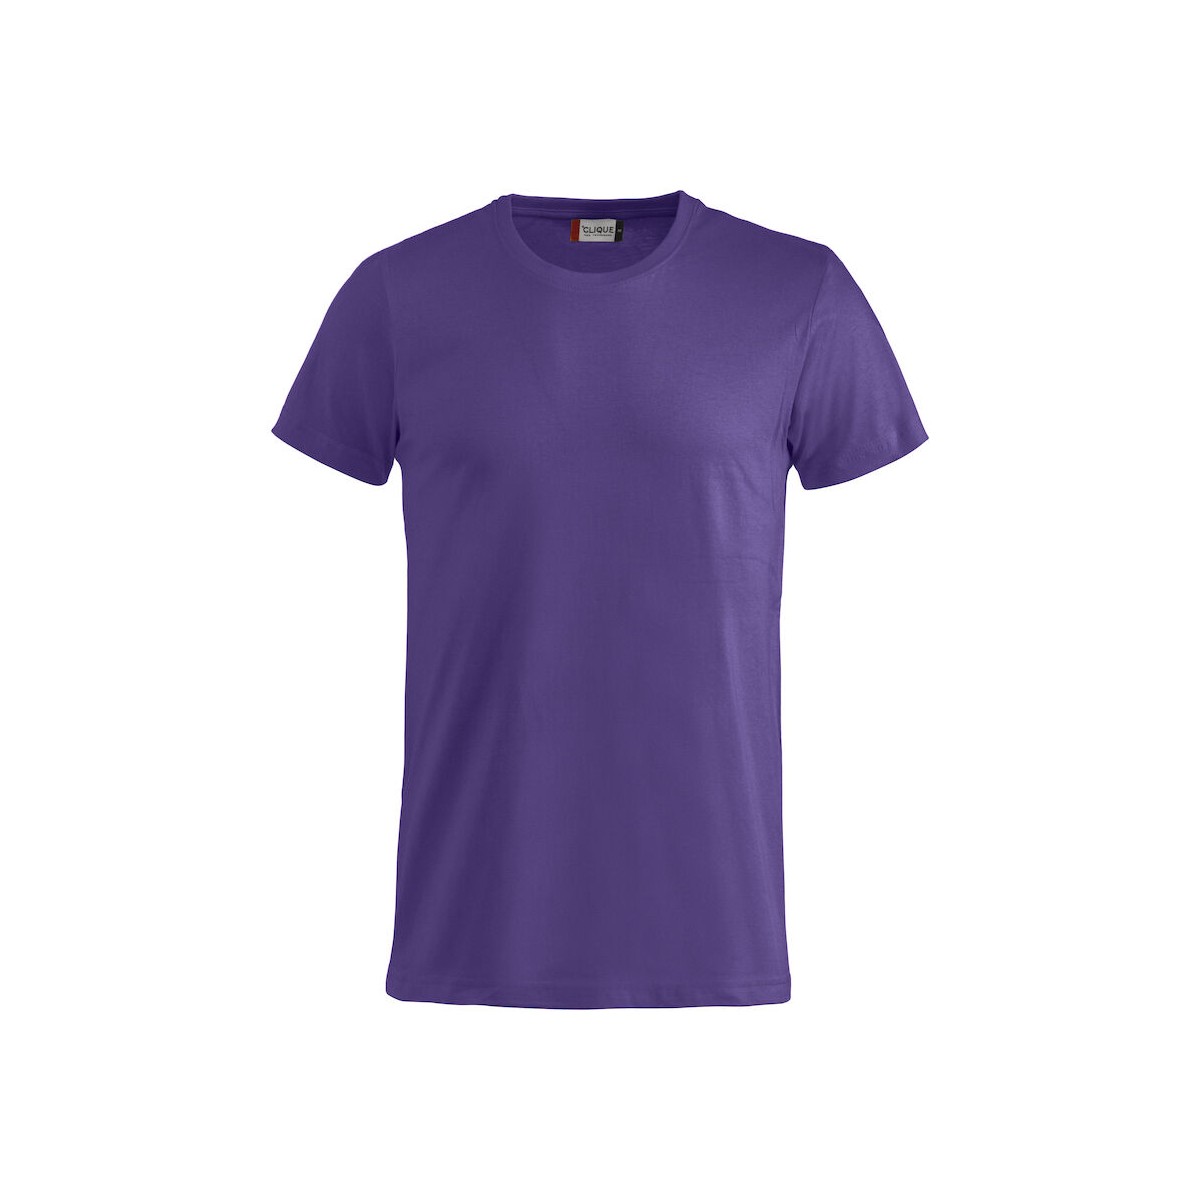 T-shirt 100% coton - CLIQUE - Coupe homme -- Personnalisable en petite quantité - Pas cher